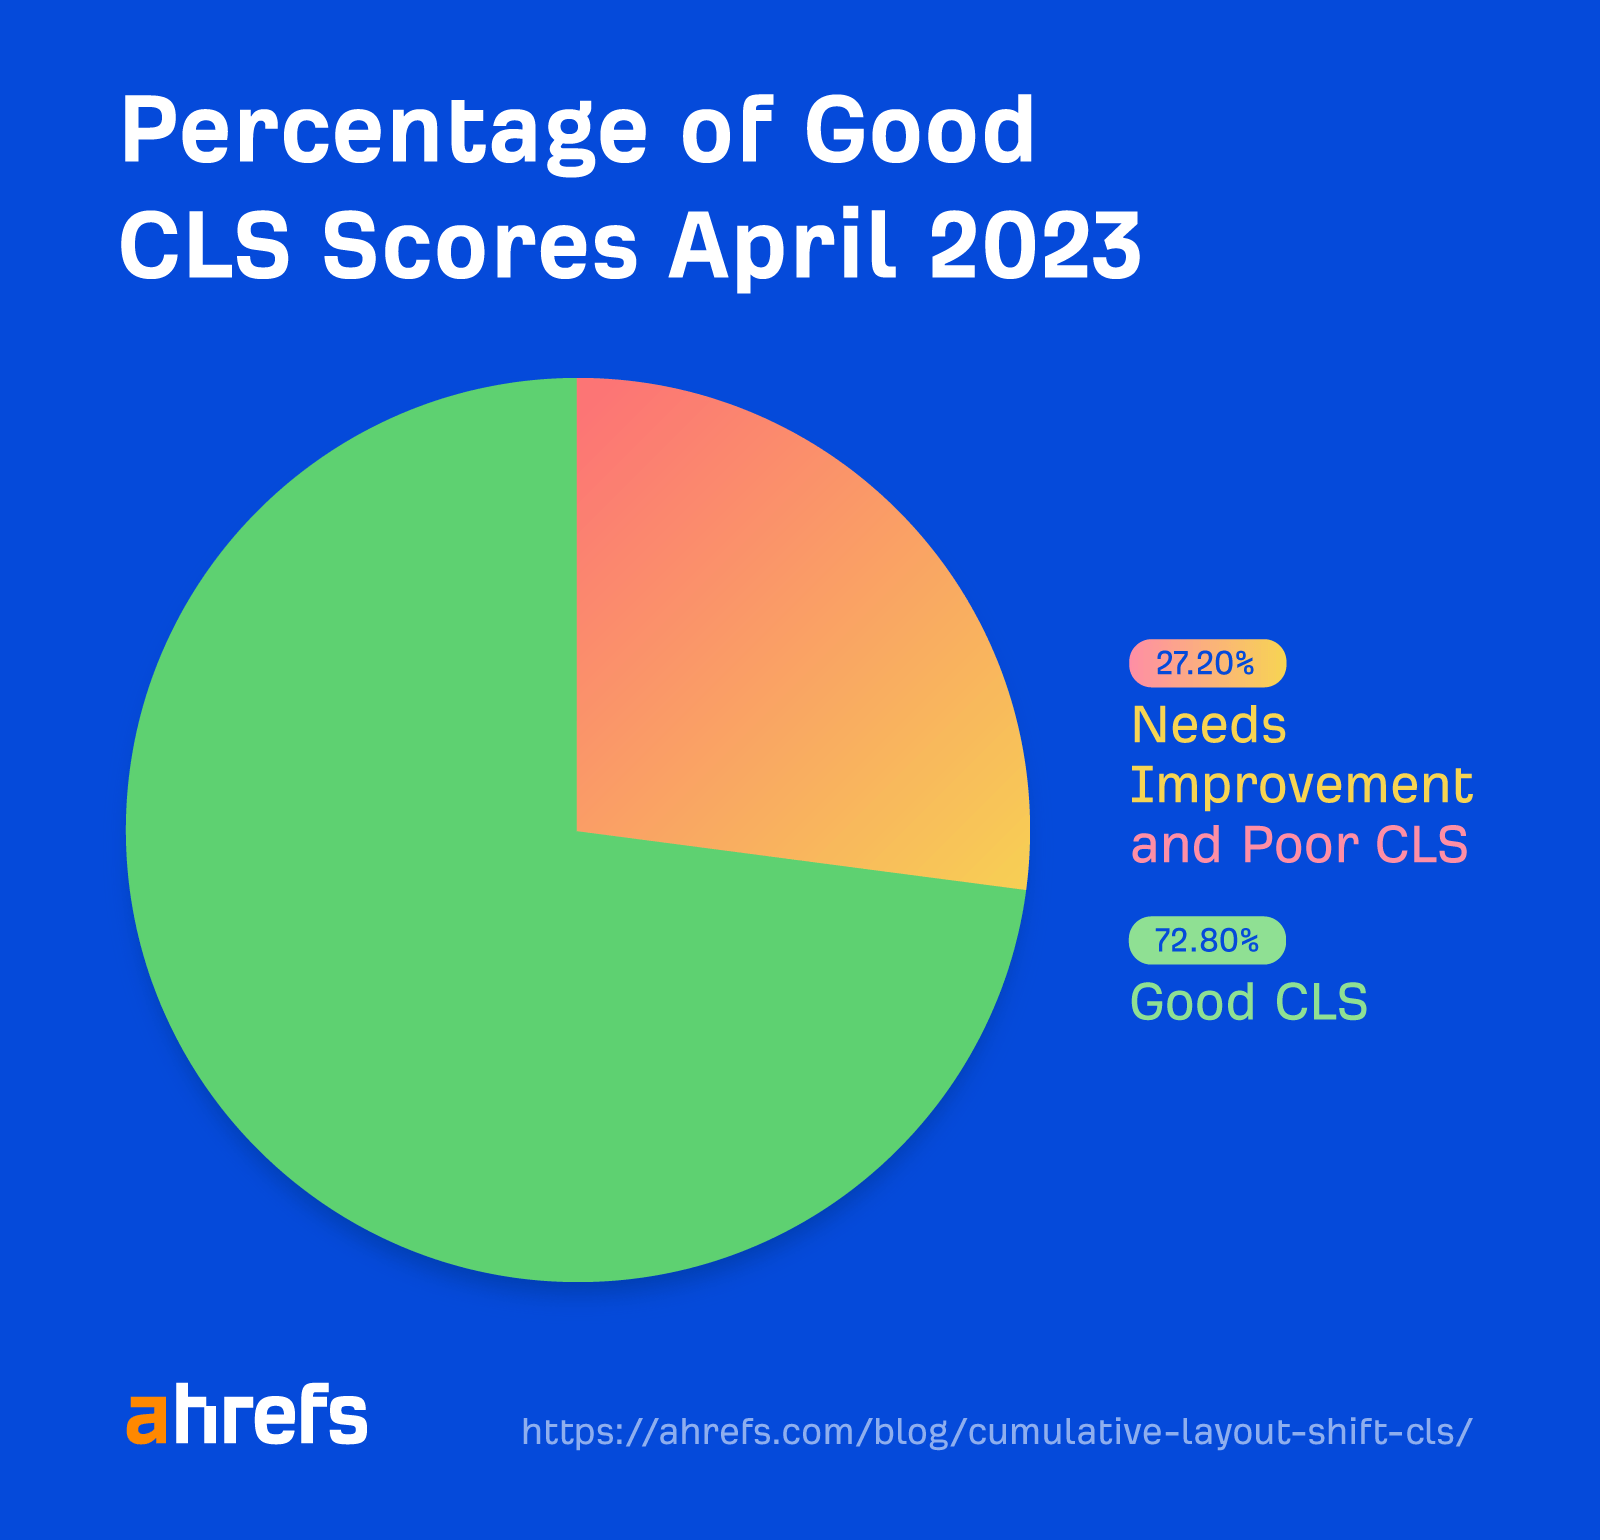 Nisan 2023 itibarıyla CrUX CWV verilerinden elde edilen iyi CLS değerlerinin yüzdesi